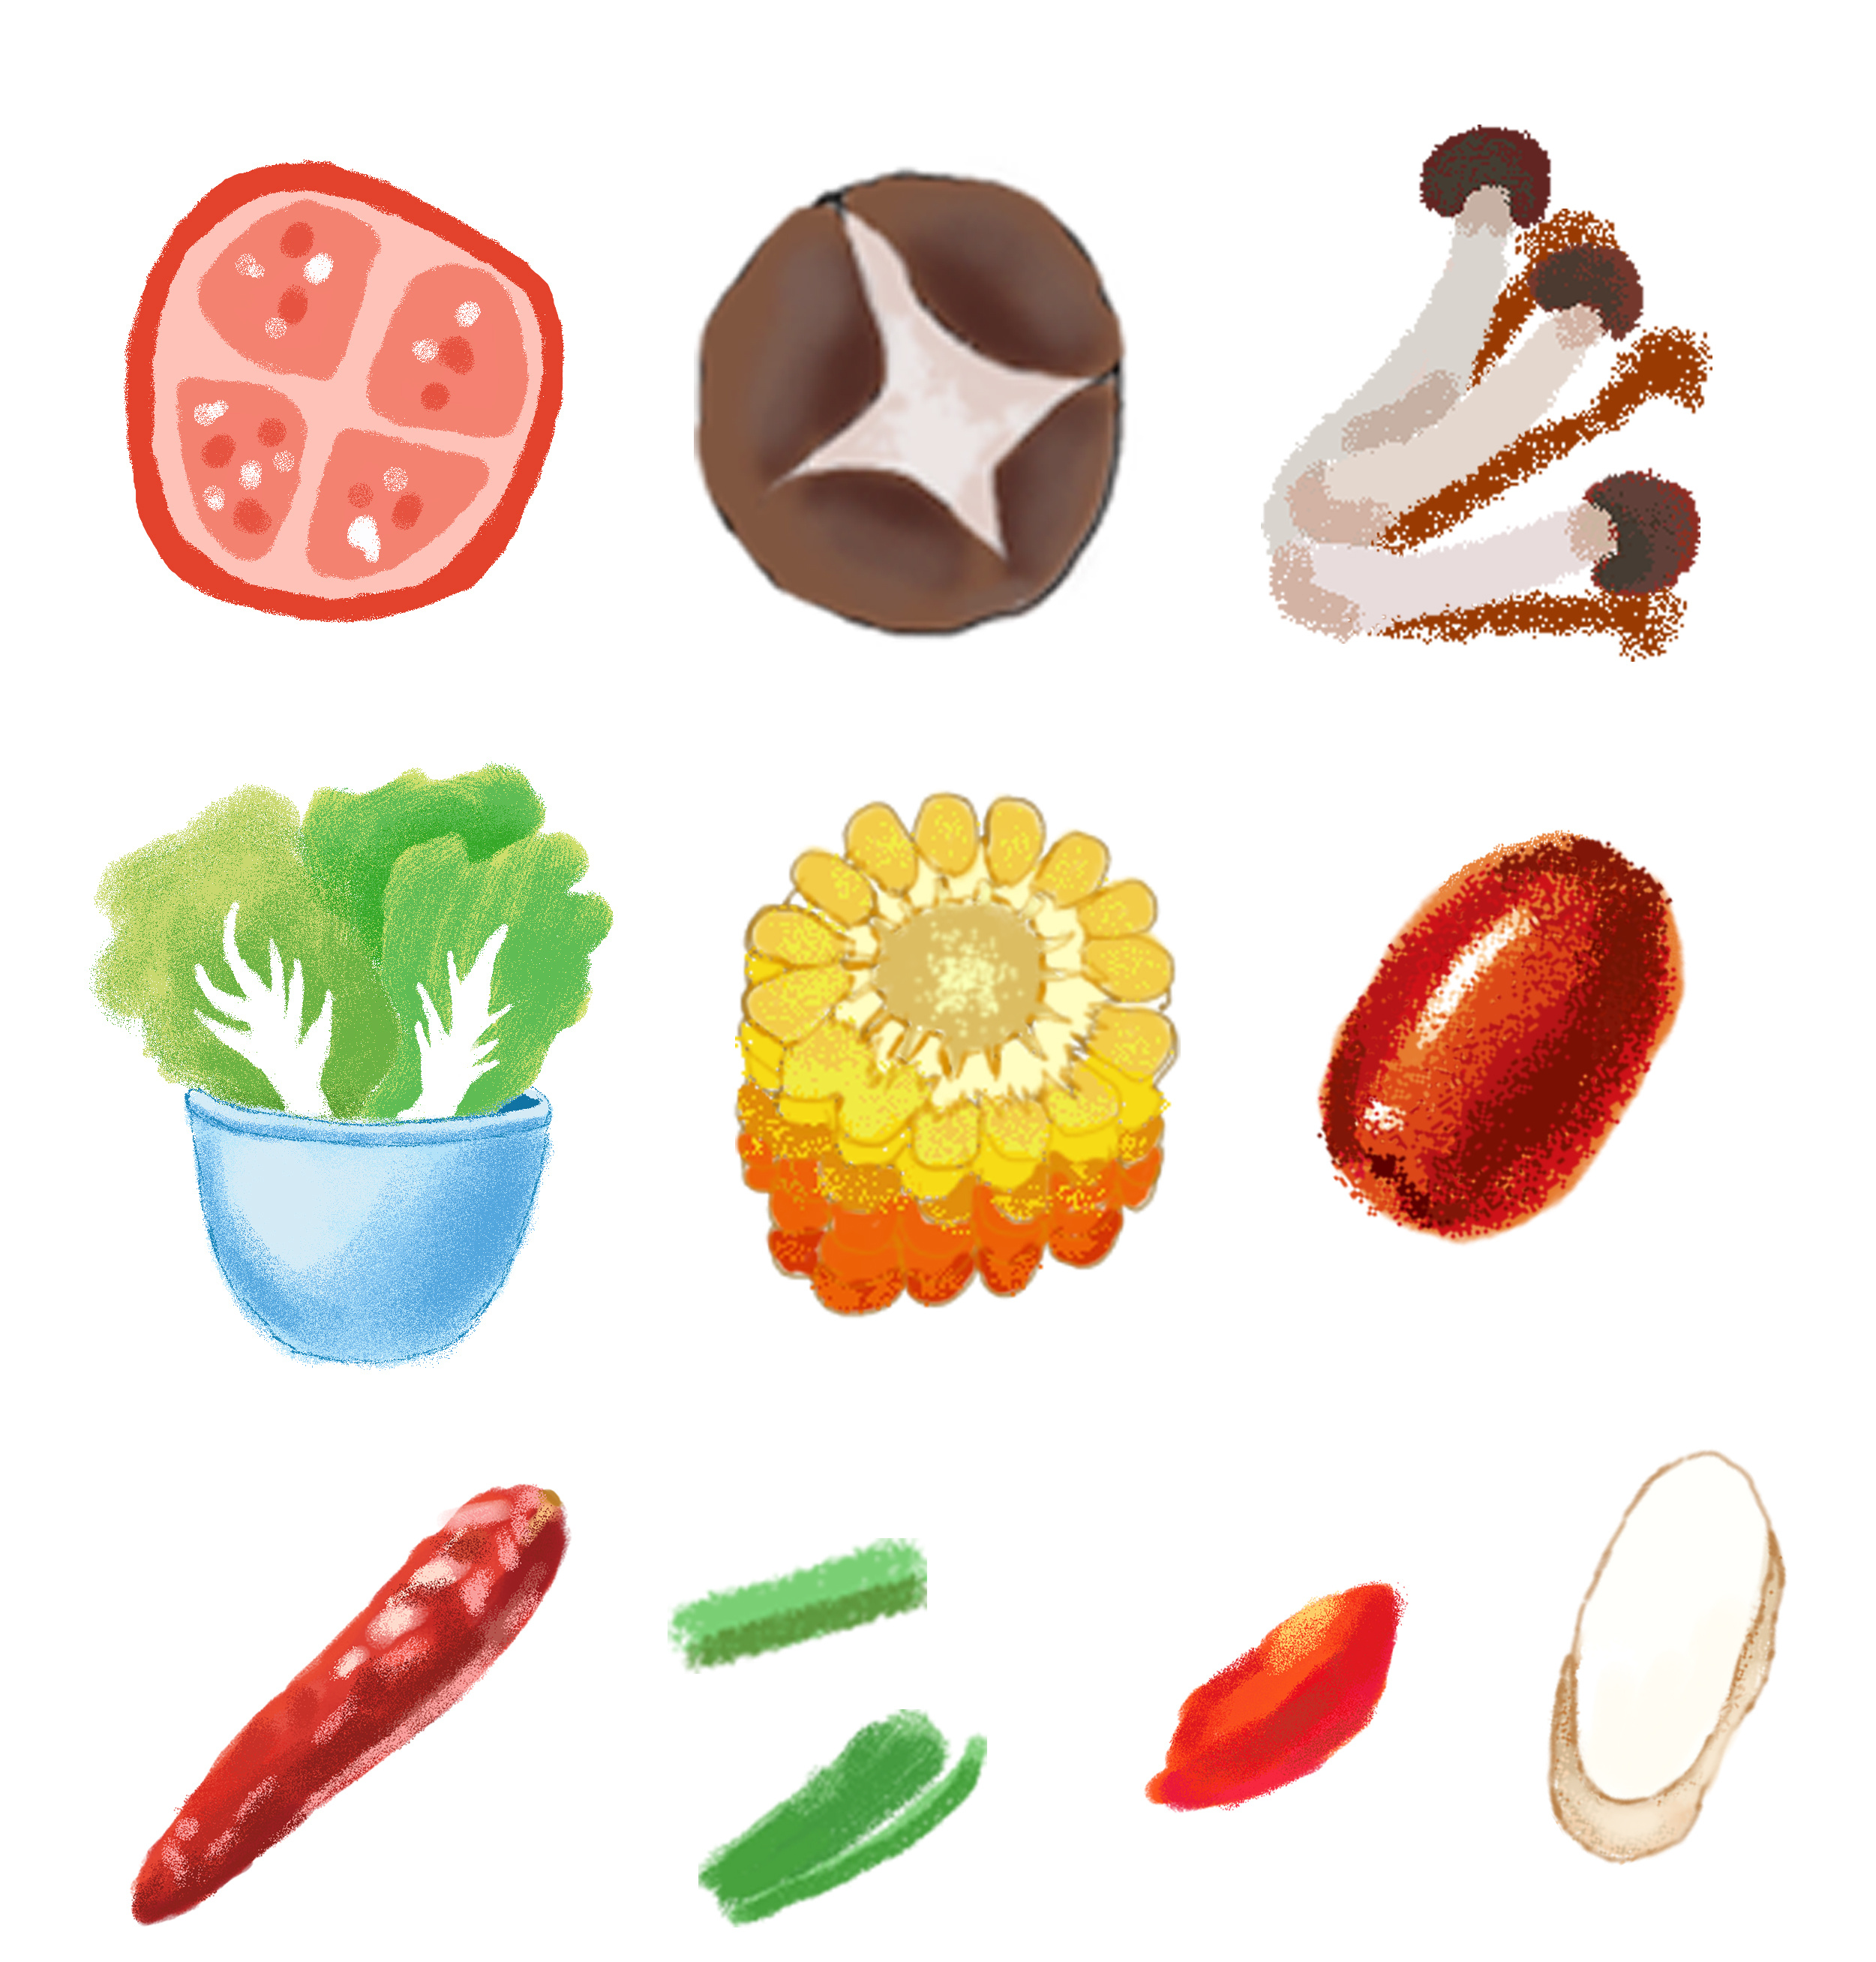 水果蔬菜卡通表情可爱角色插画 - 模板 - Canva可画